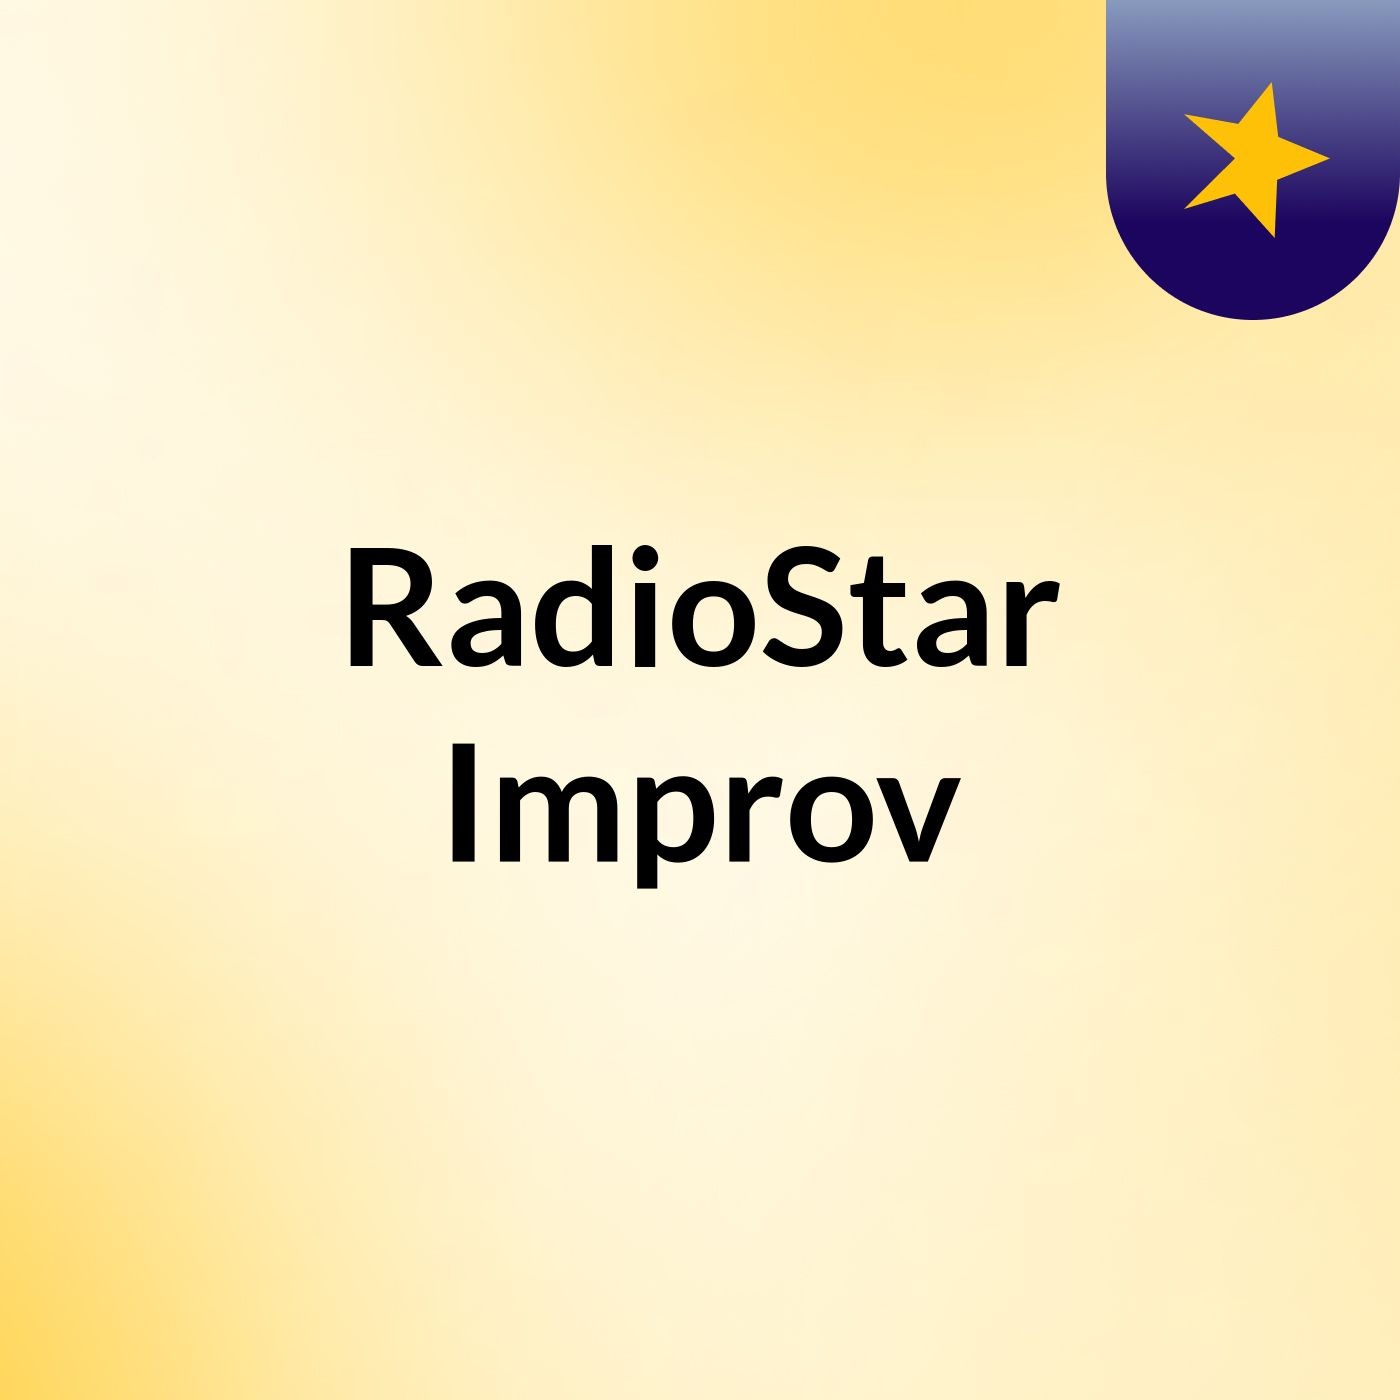 RadioStar: Improv